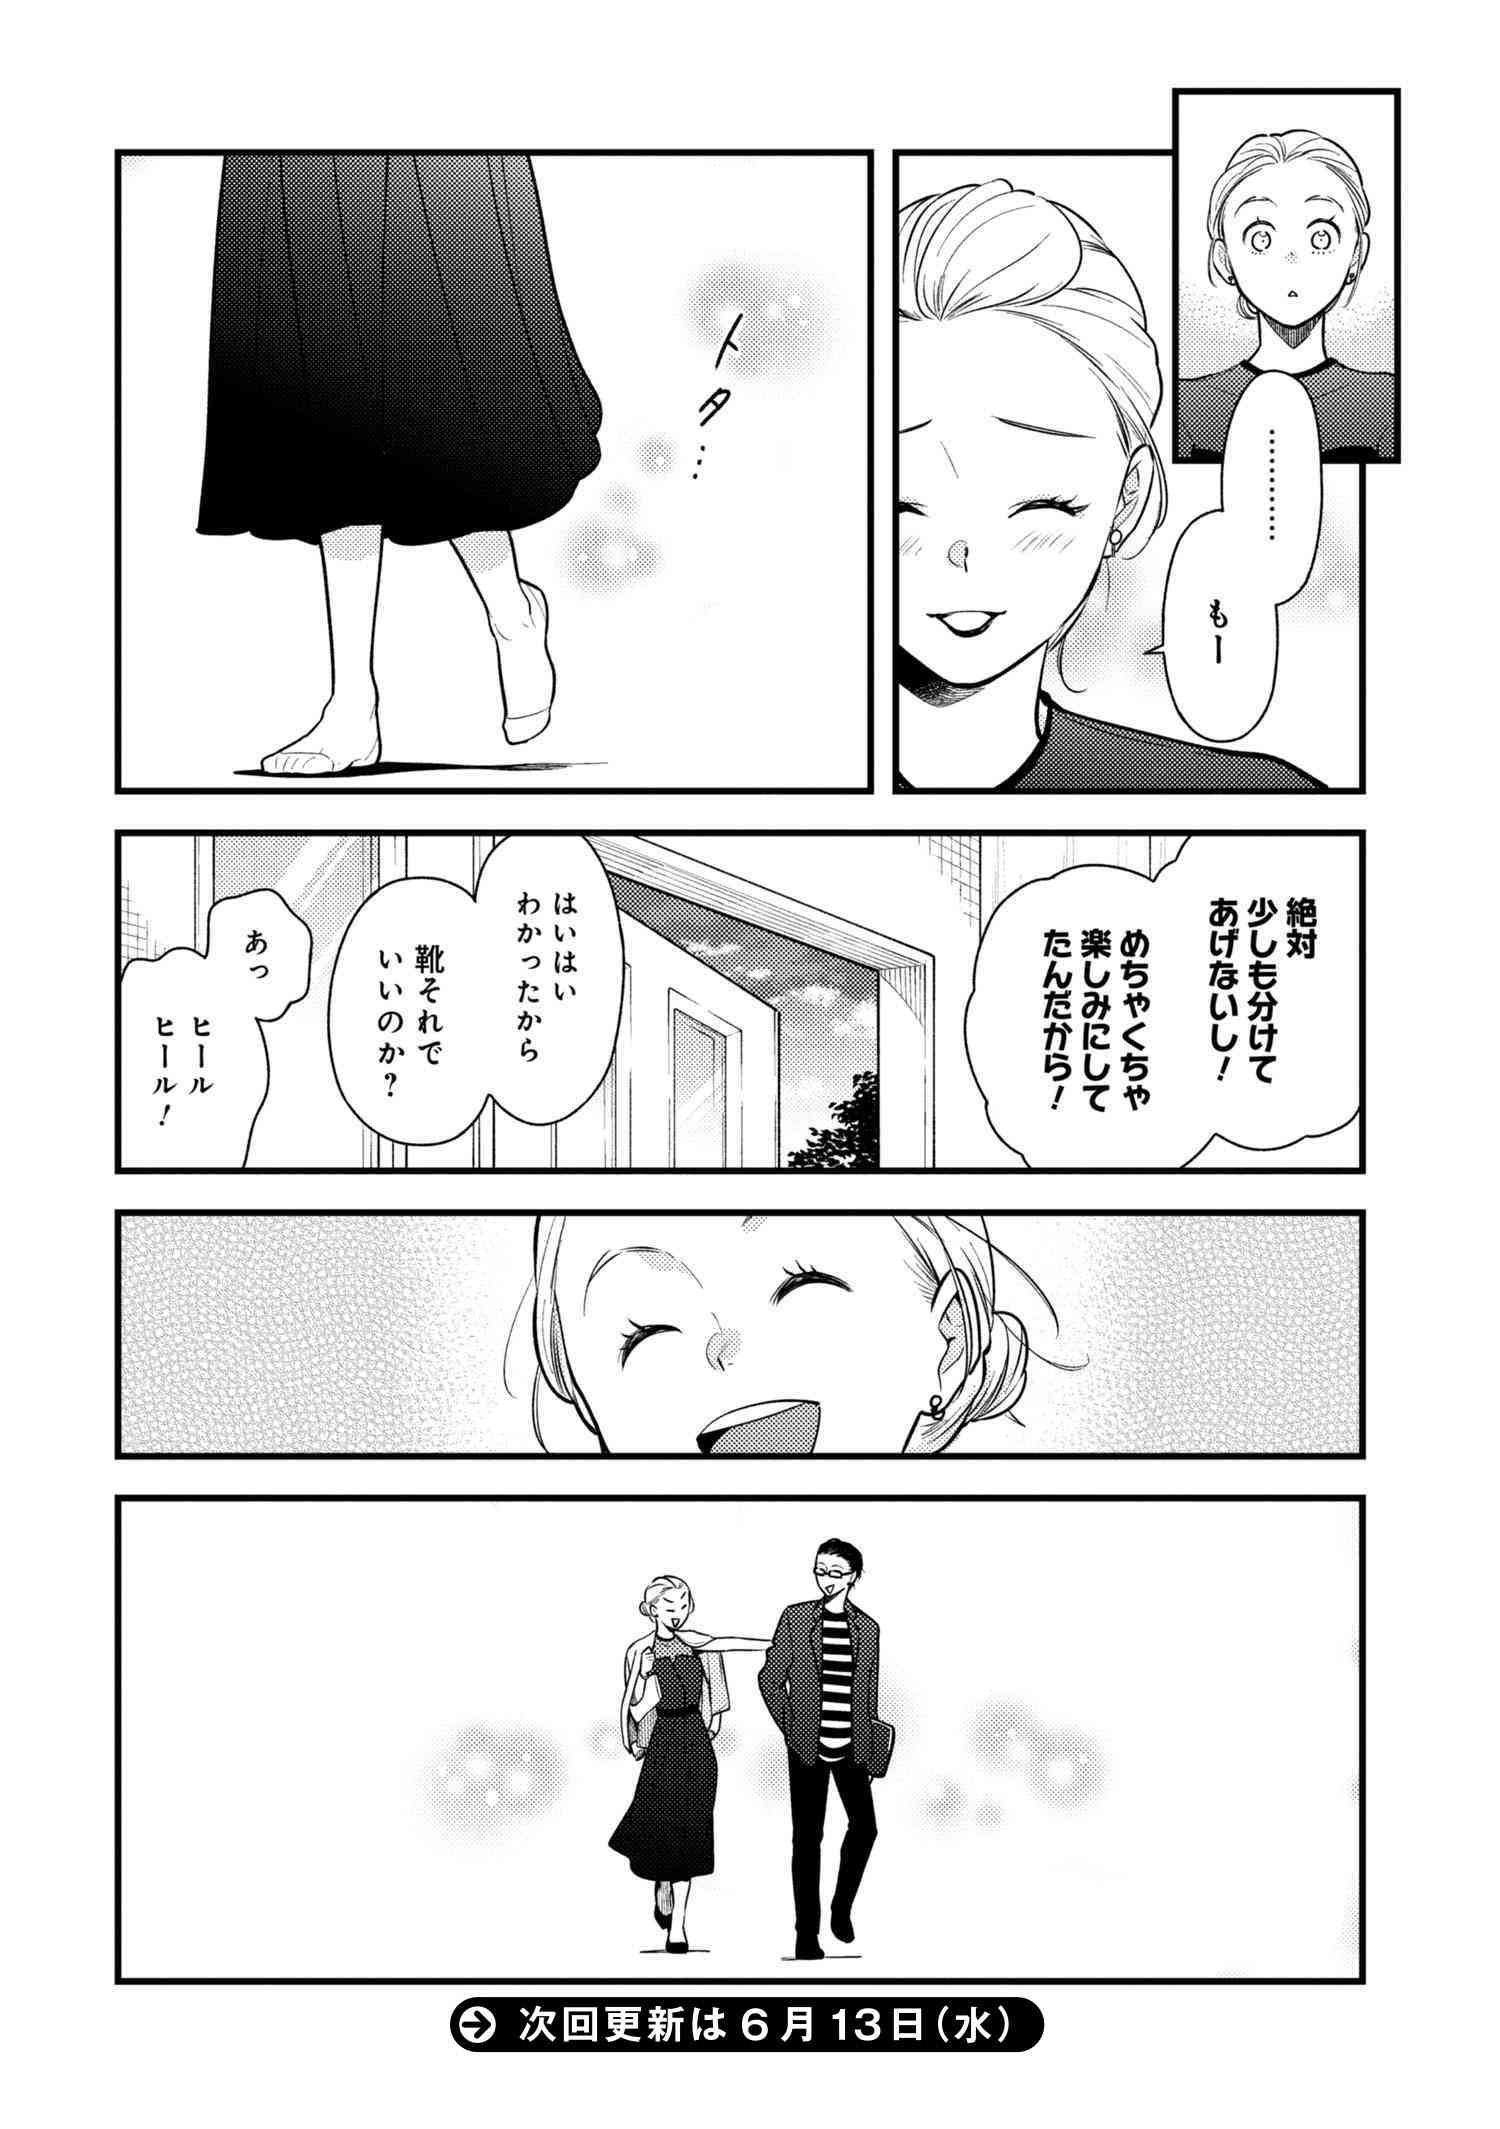 Fuku o Kiru Nara Konna Fuu ni - 服を着るならこんなふうに - Chapter 54 - Page 18